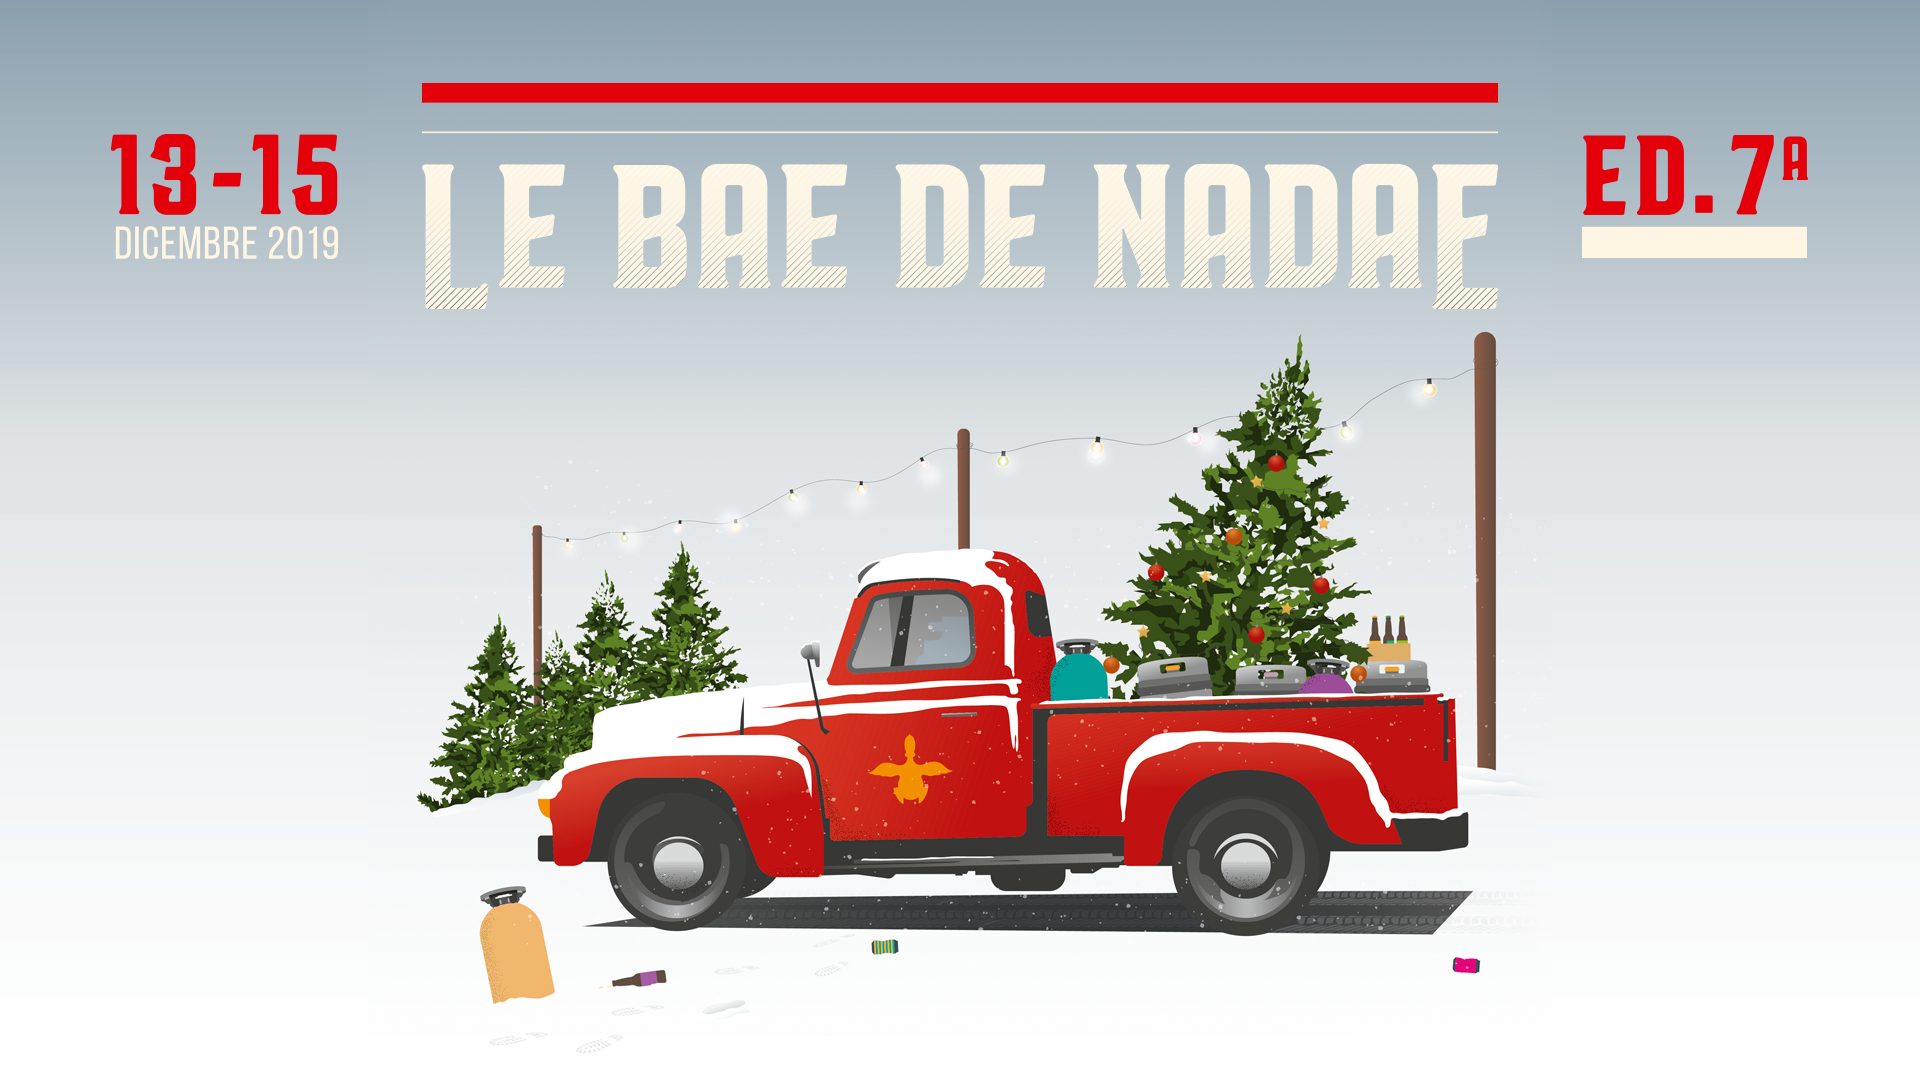 L’evento “Bae de Nadae” dal 13 al 15 dicembre arriva alla sua 7° edizione!